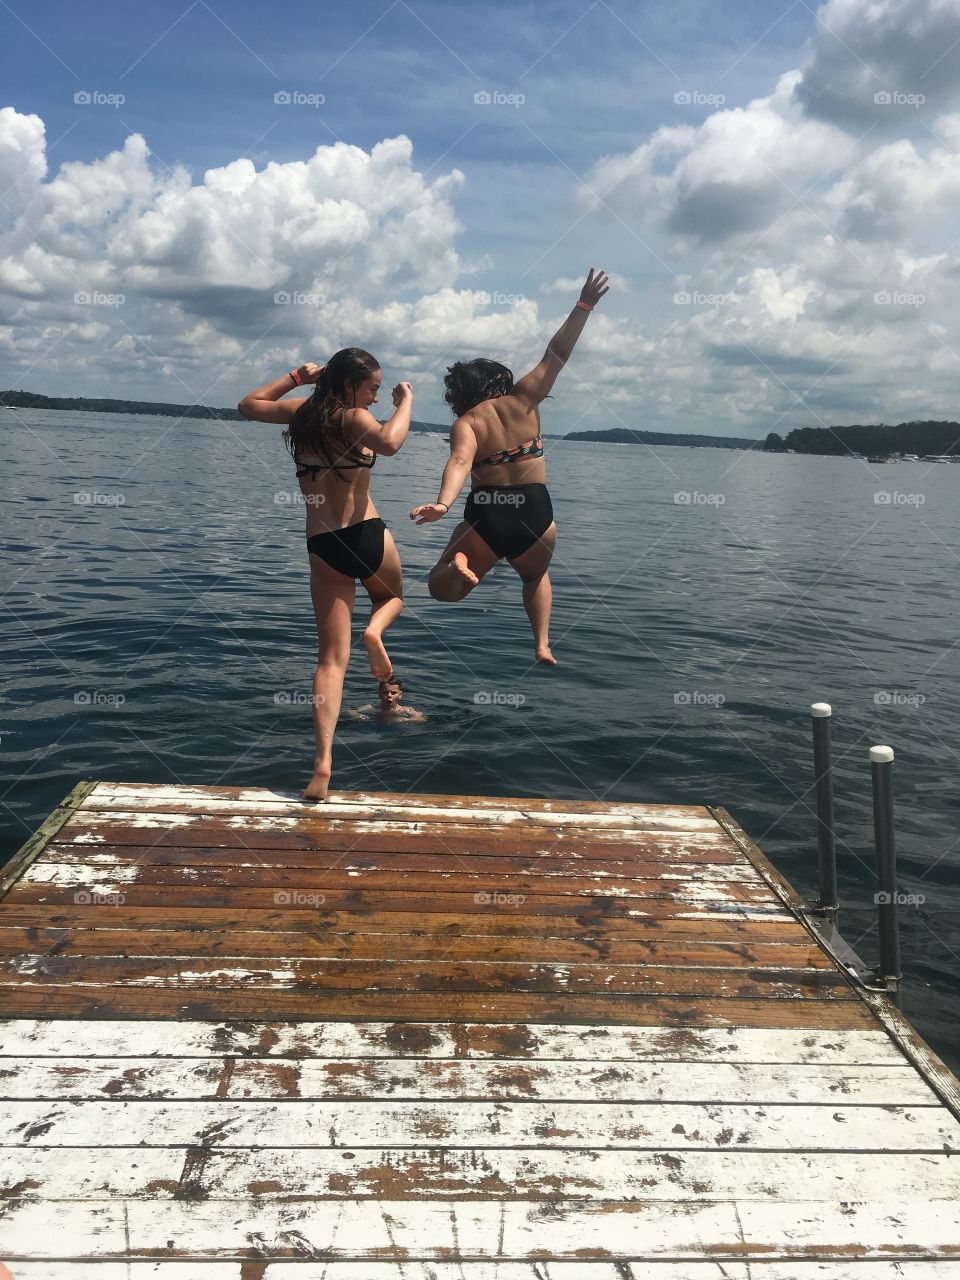 Pier, jumping, lake, dock